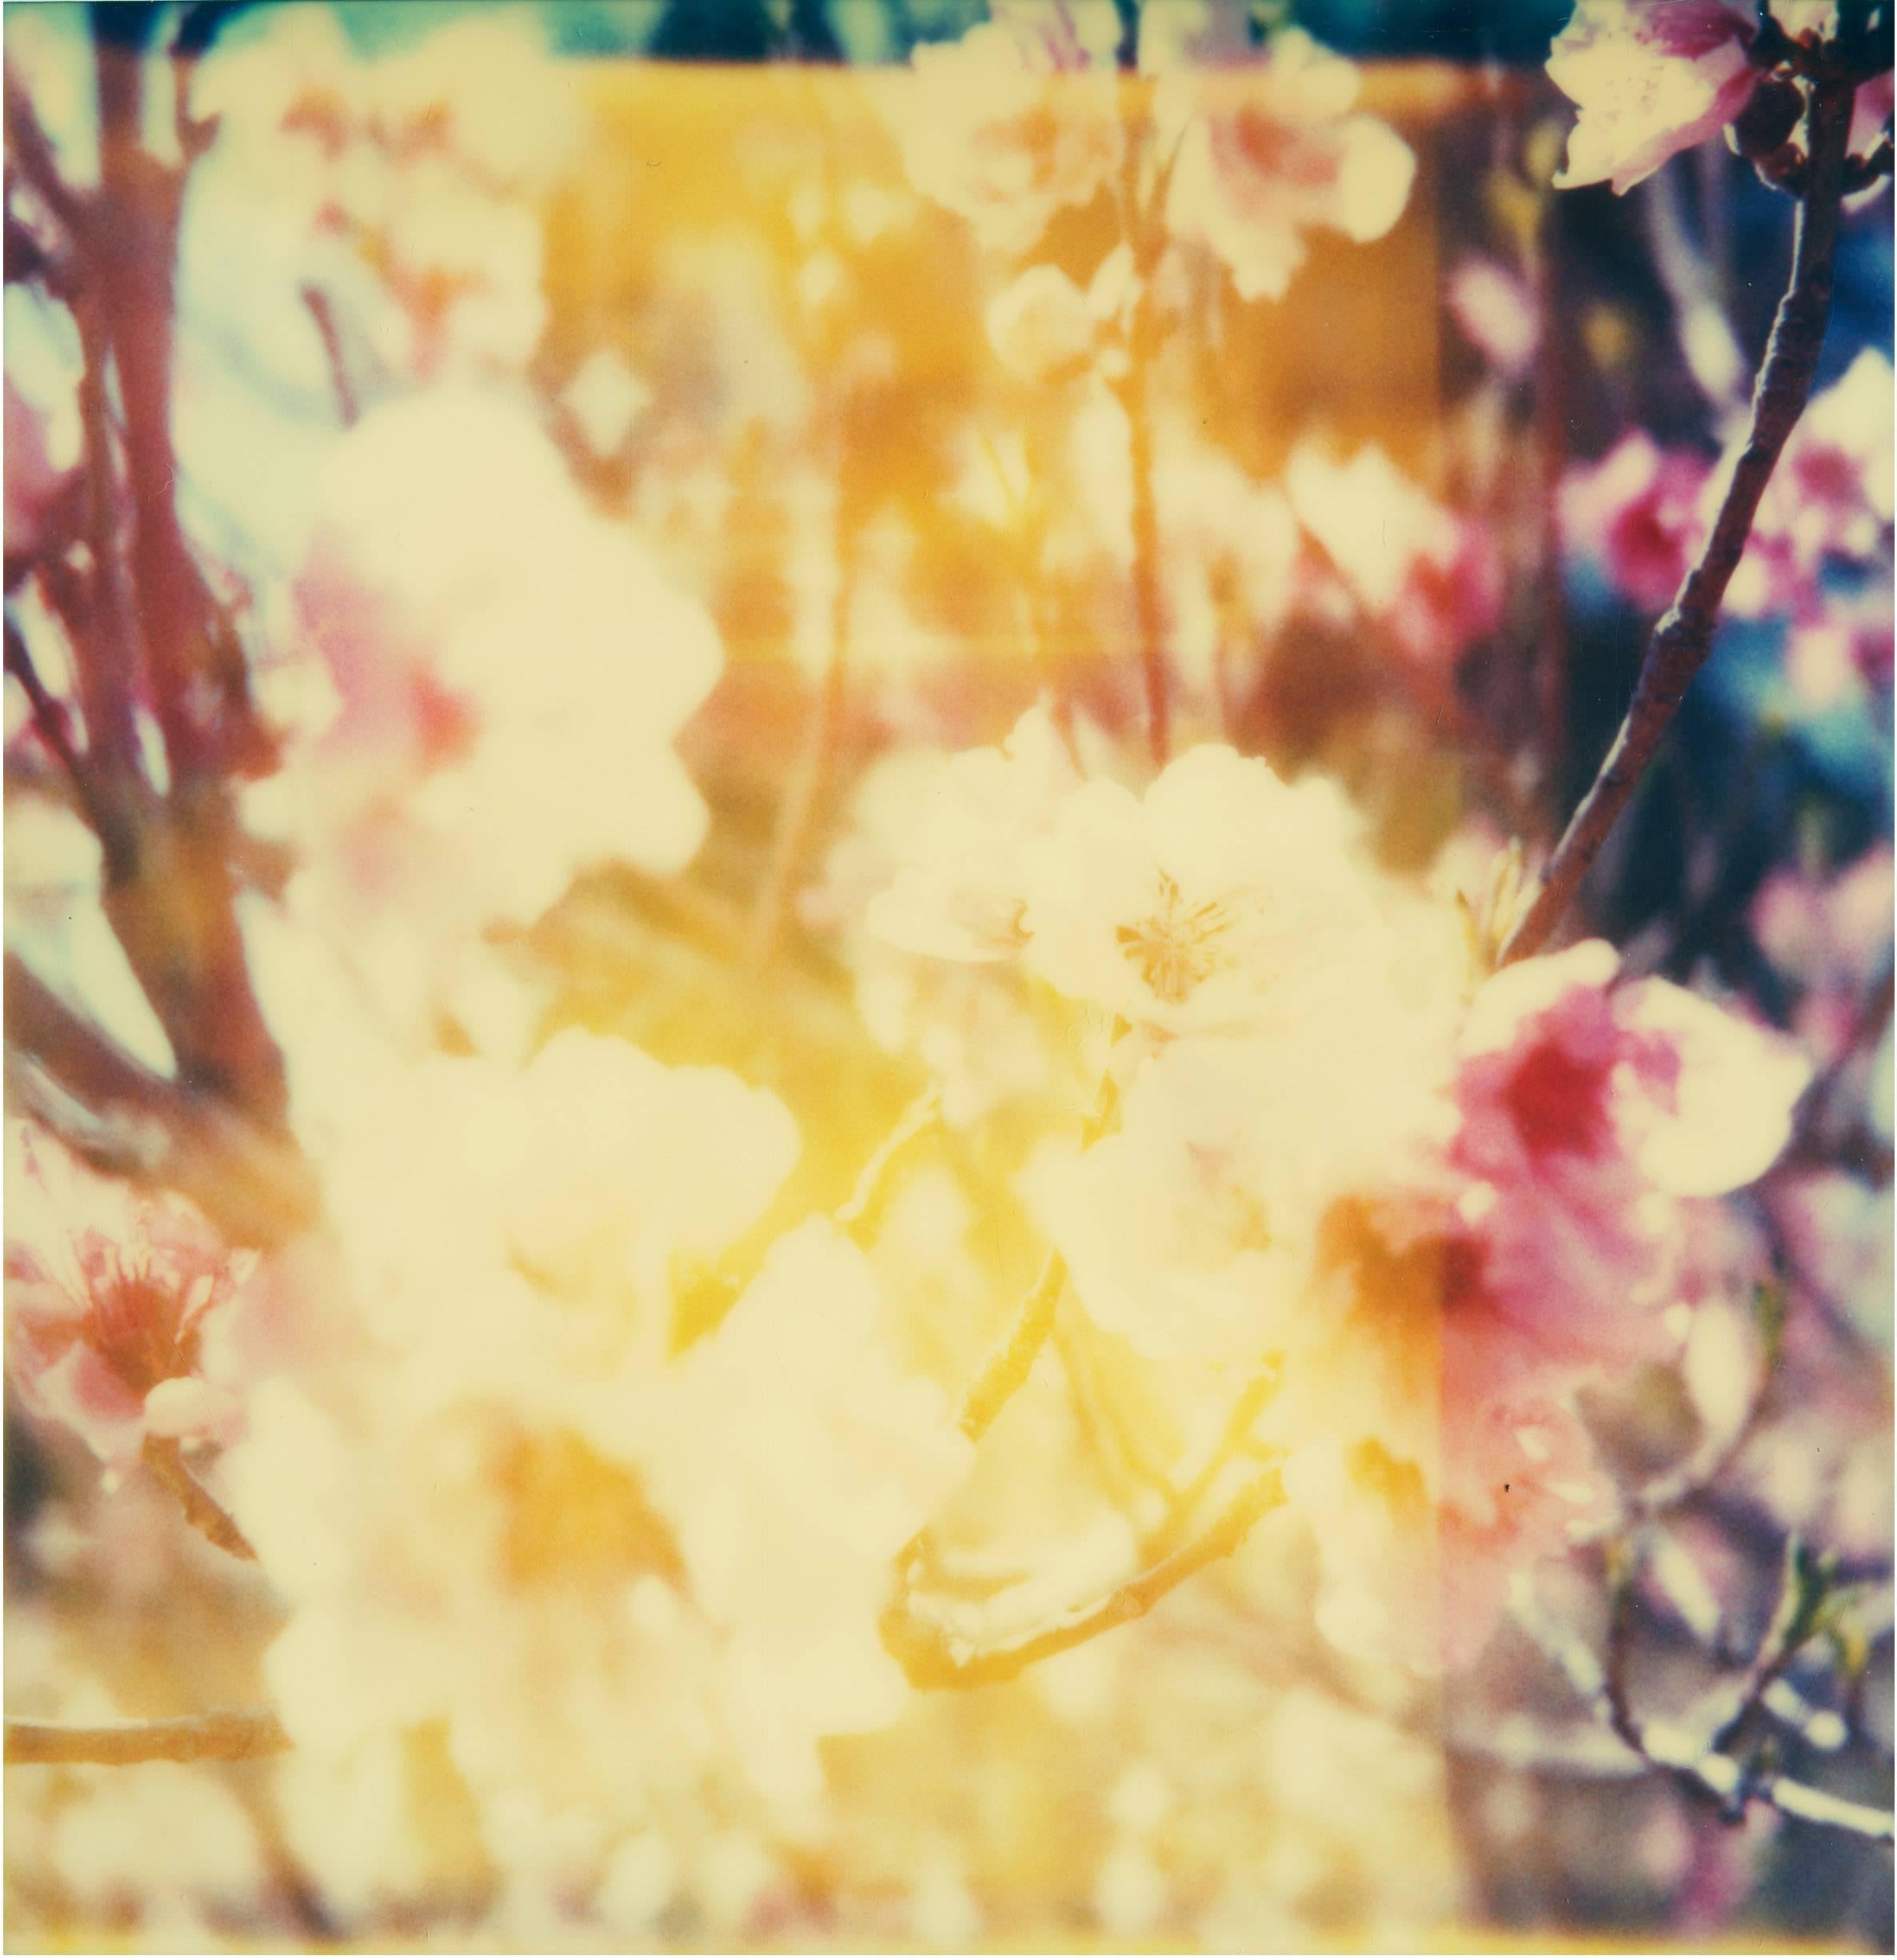 Kirschbaumblütenblüten - Till Death du us Part, Diptychon (Zeitgenössisch), Photograph, von Stefanie Schneider